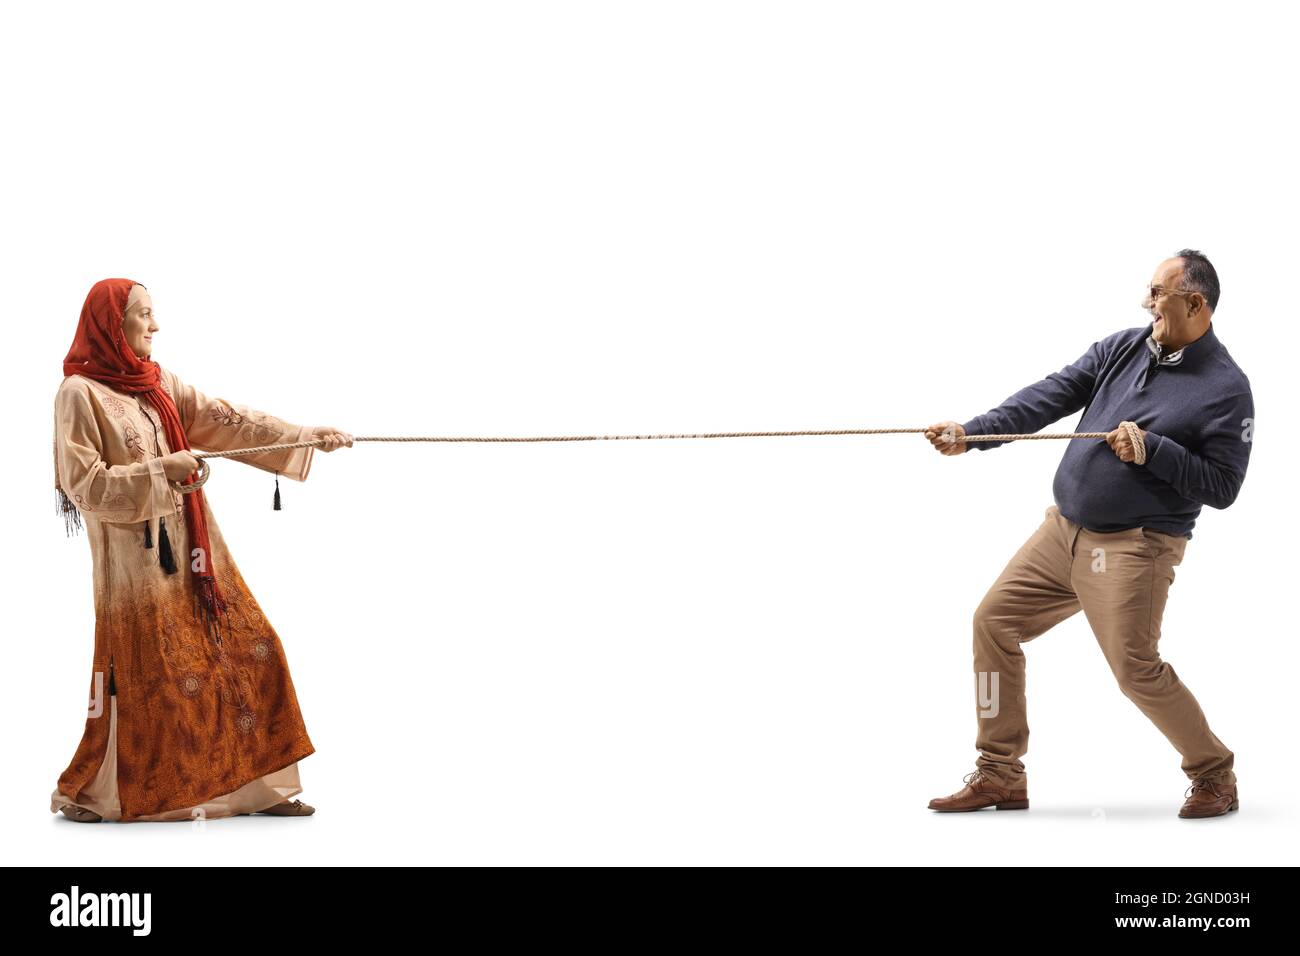 Photo pleine longueur d'une femme portant un hijab et d'un homme mature tirant une corde isolée sur fond blanc Banque D'Images